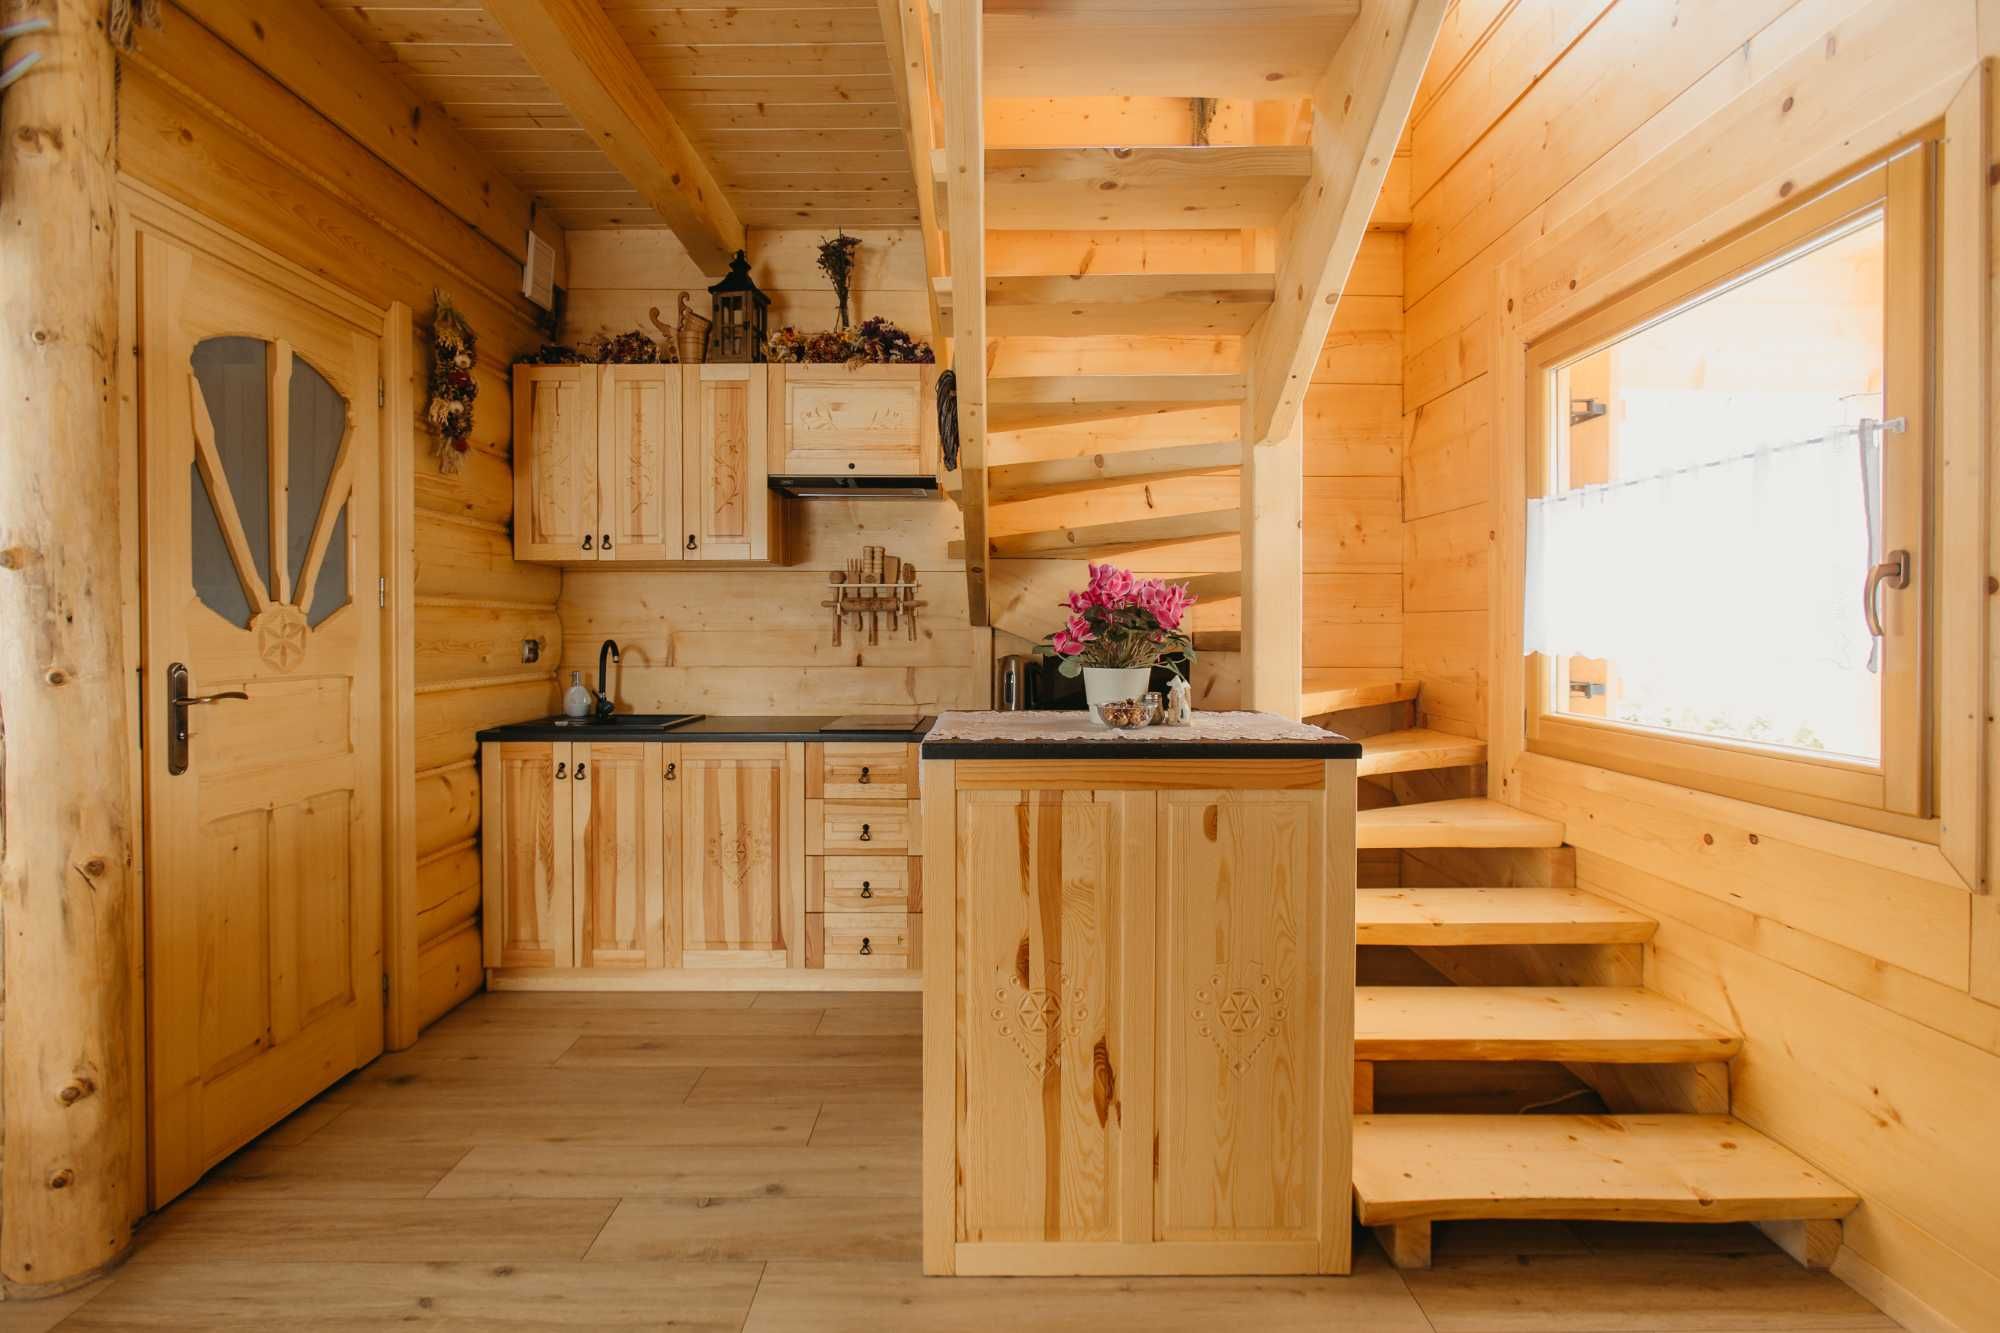 Domek drewniany w górach wakacje ,ferie, noclegi  wczasy bilard sauna